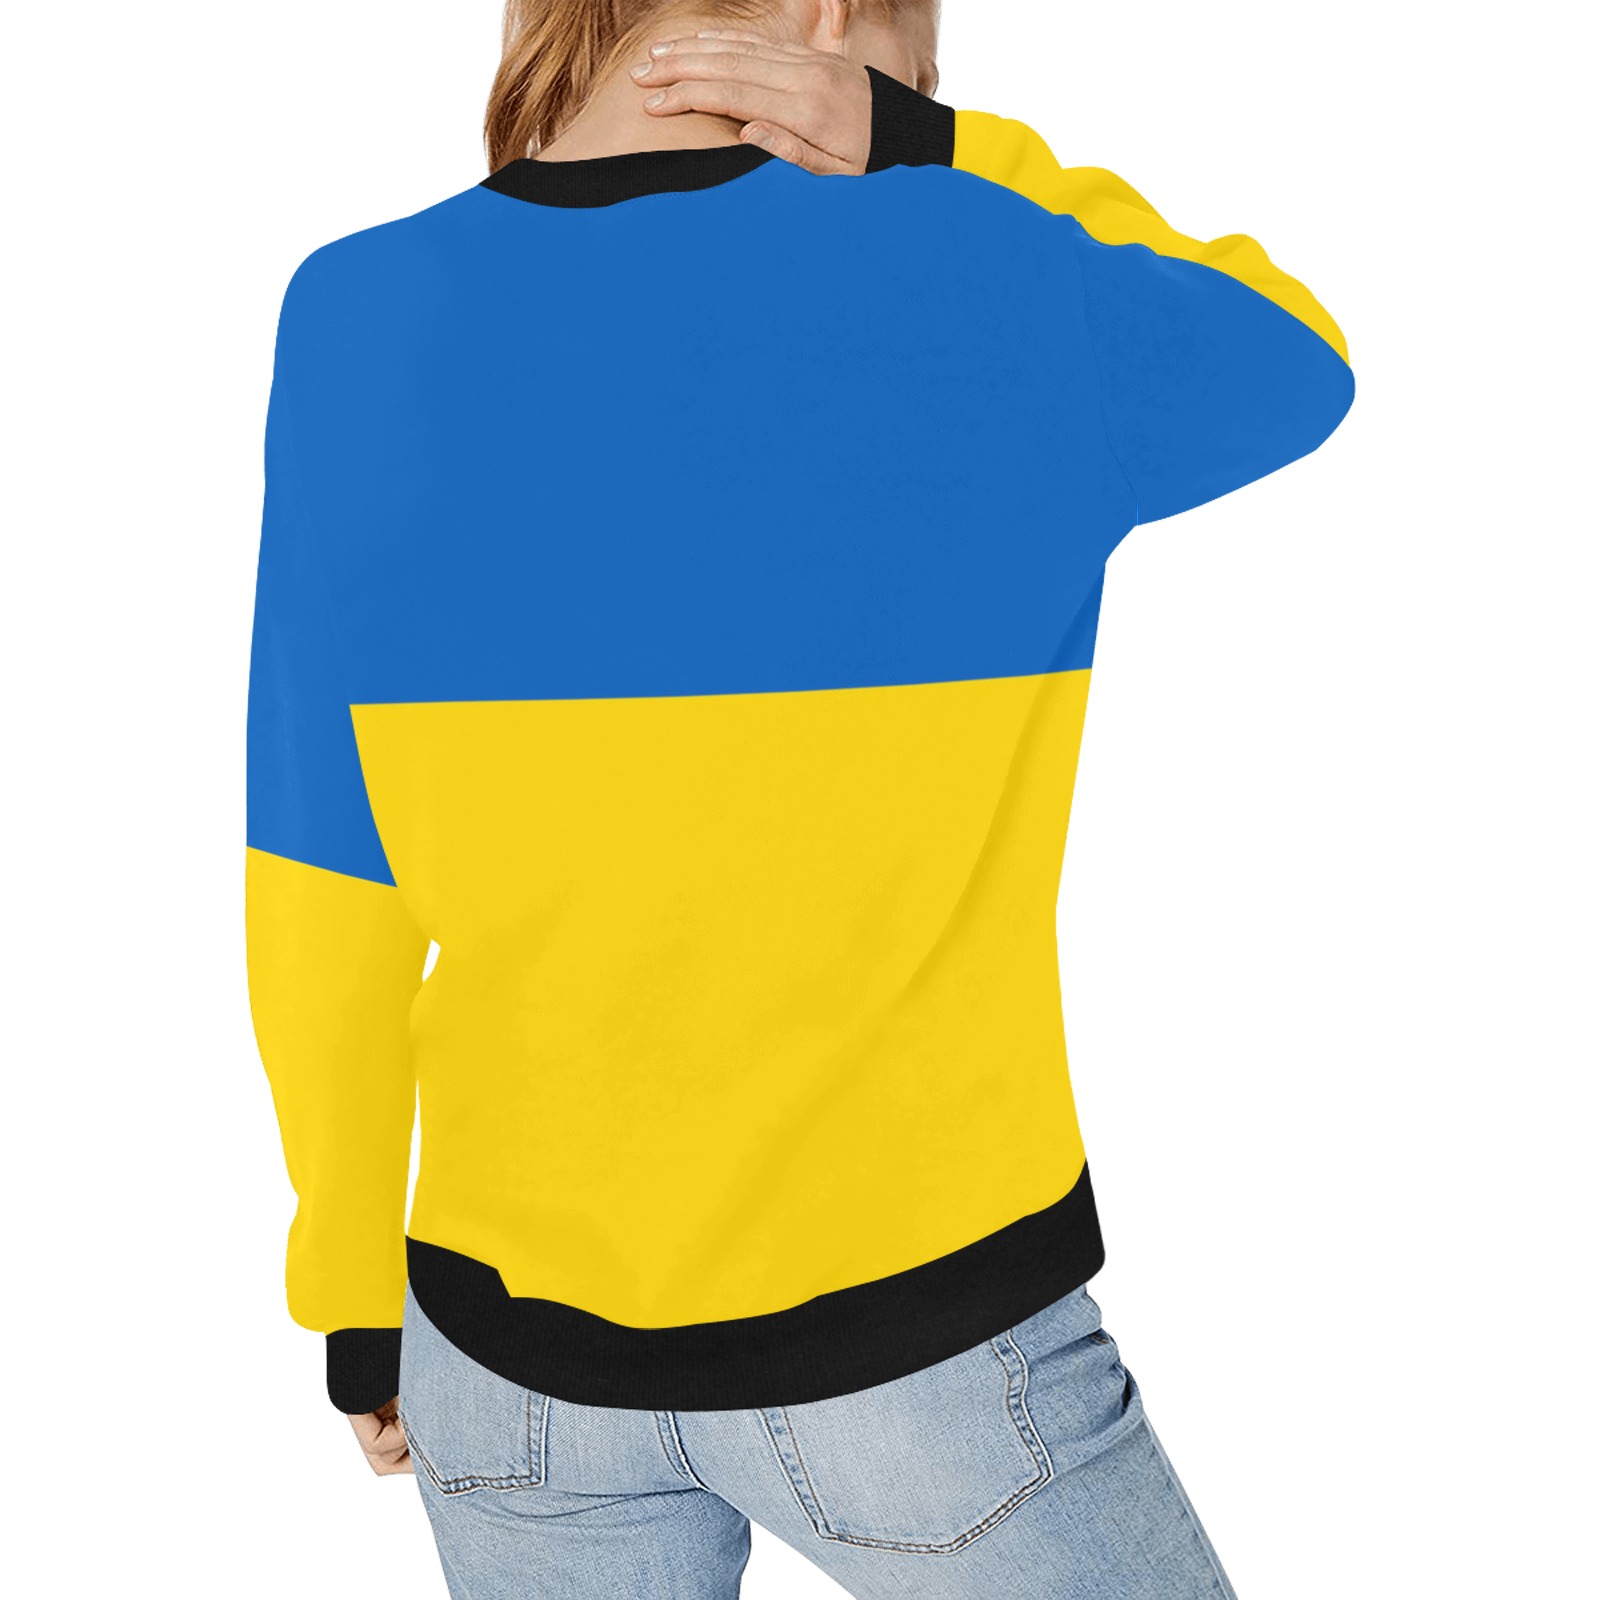 UKRAINE Women's Rib Cuff Crew Neck Sweatshirt (Model H34)